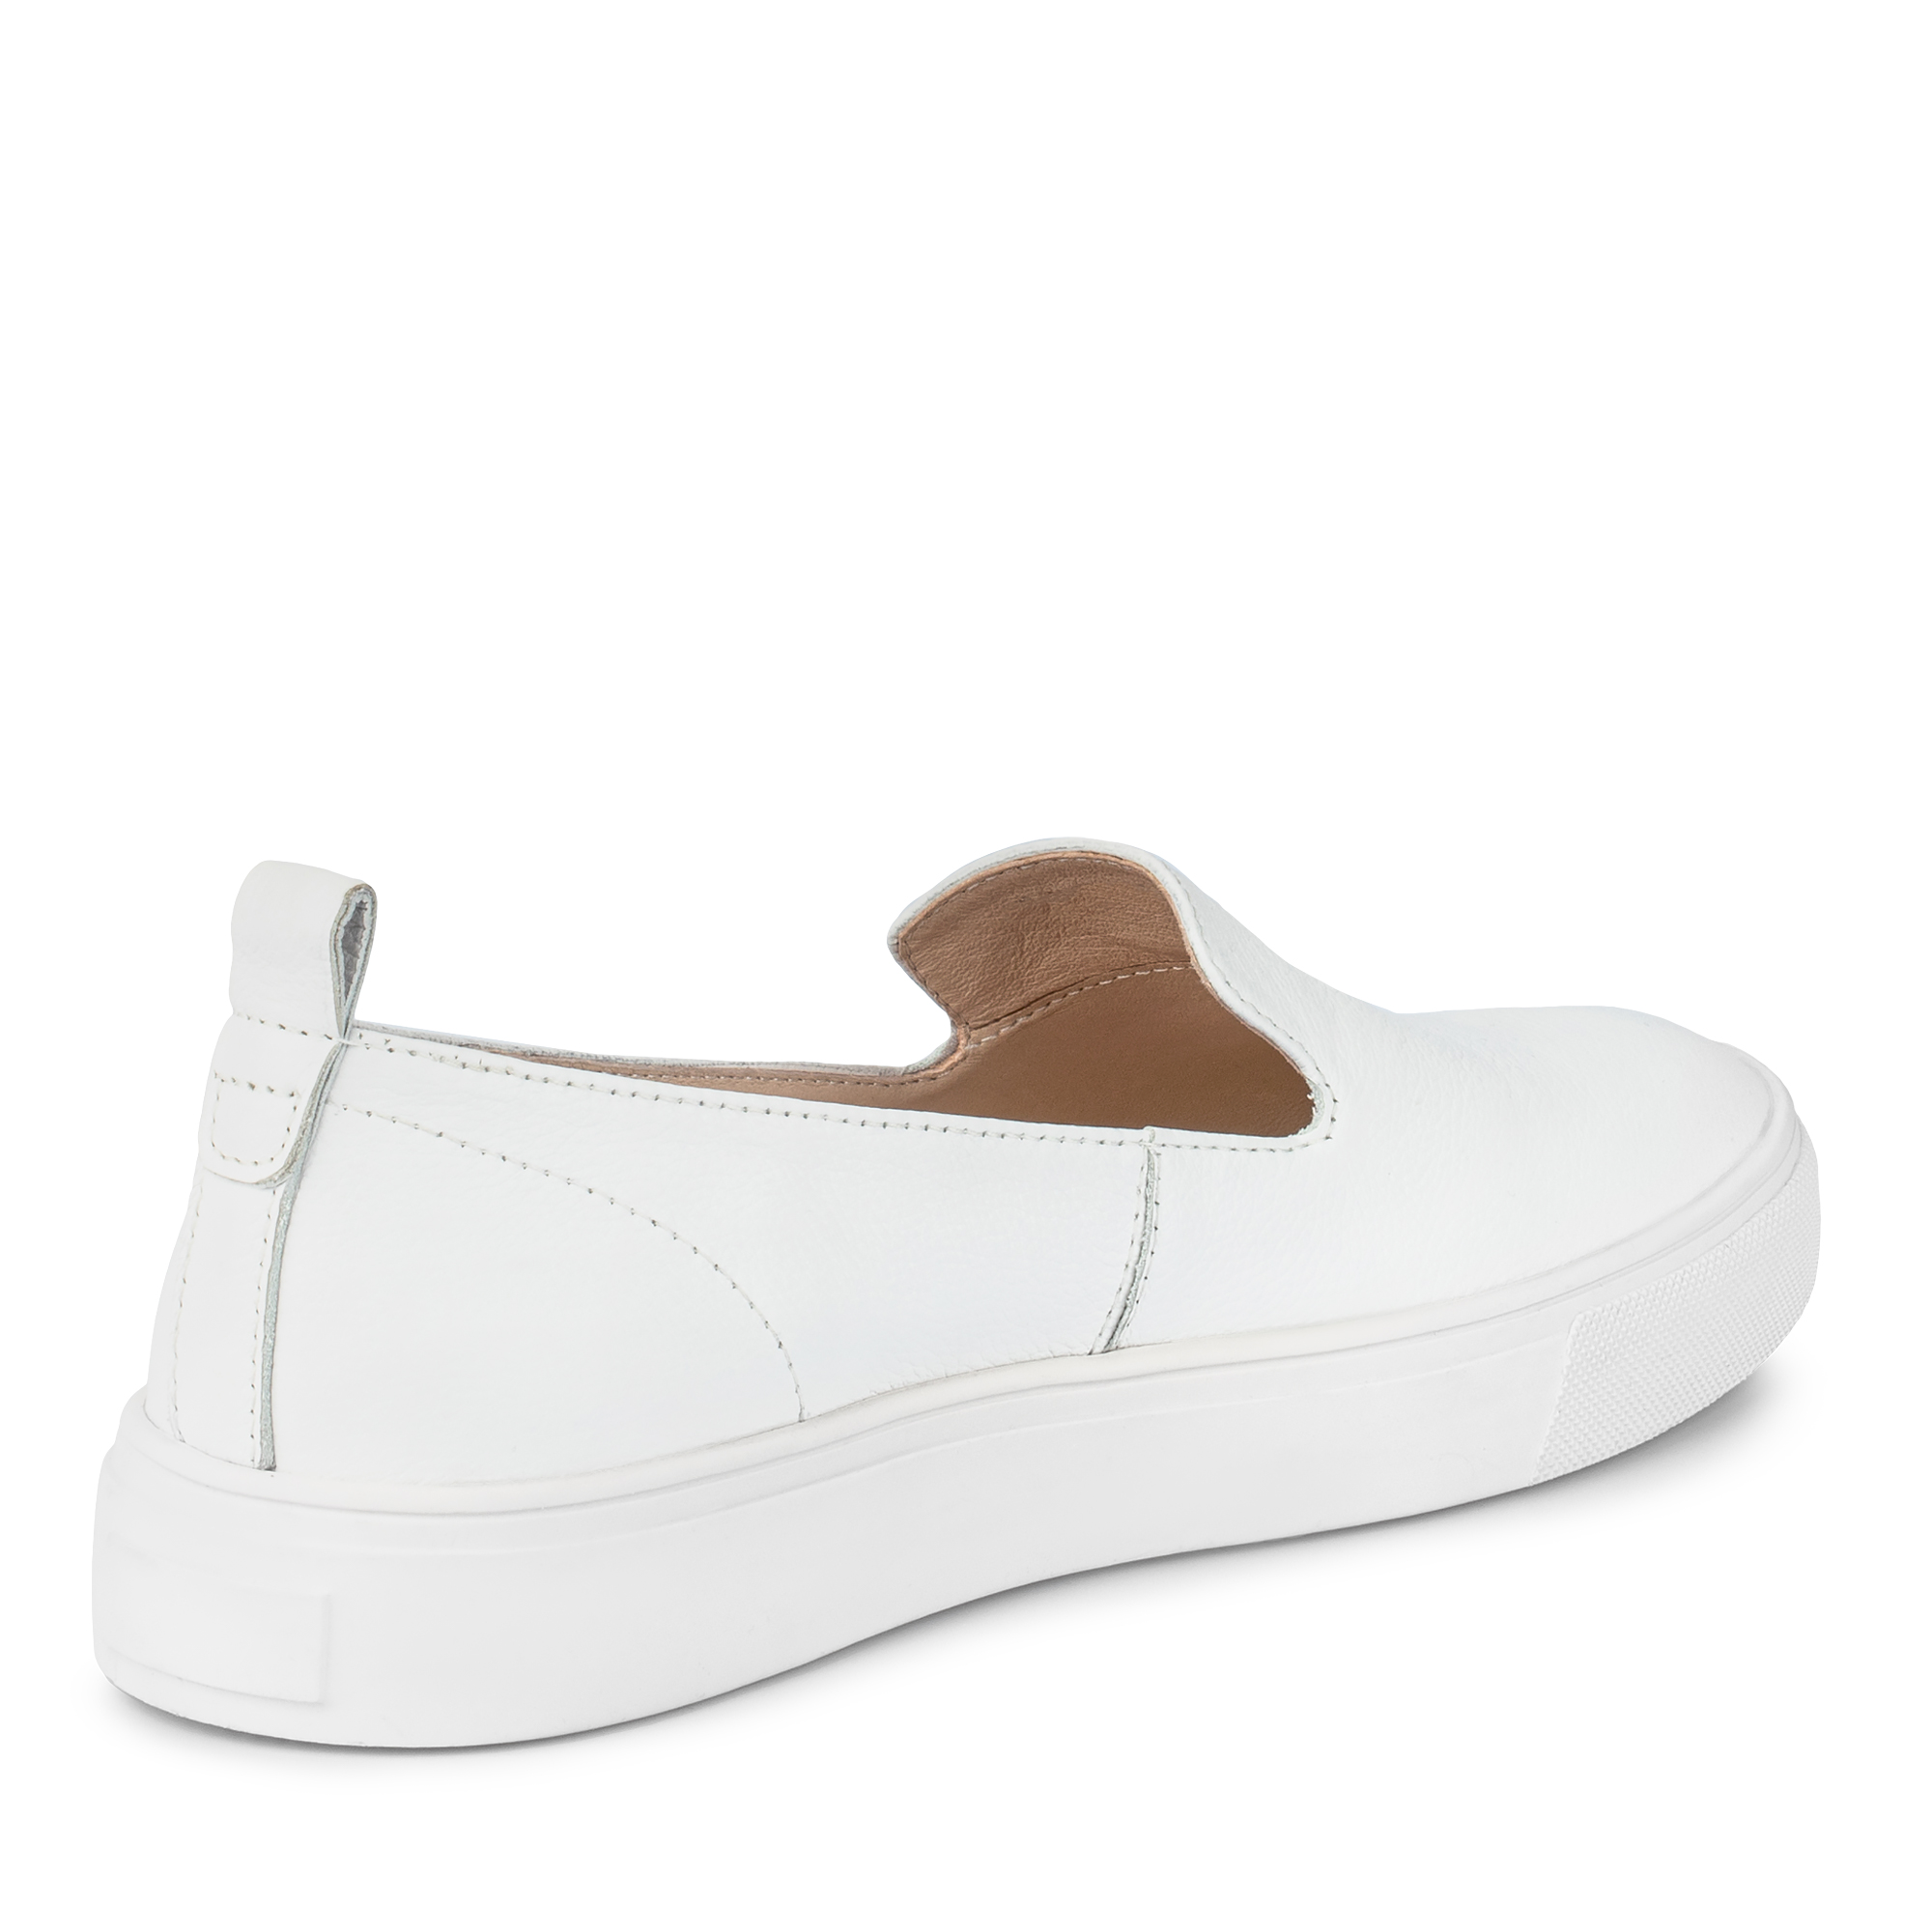 Туфли Thomas Munz 126-461A-1101, цвет белый, размер 35 - фото 3